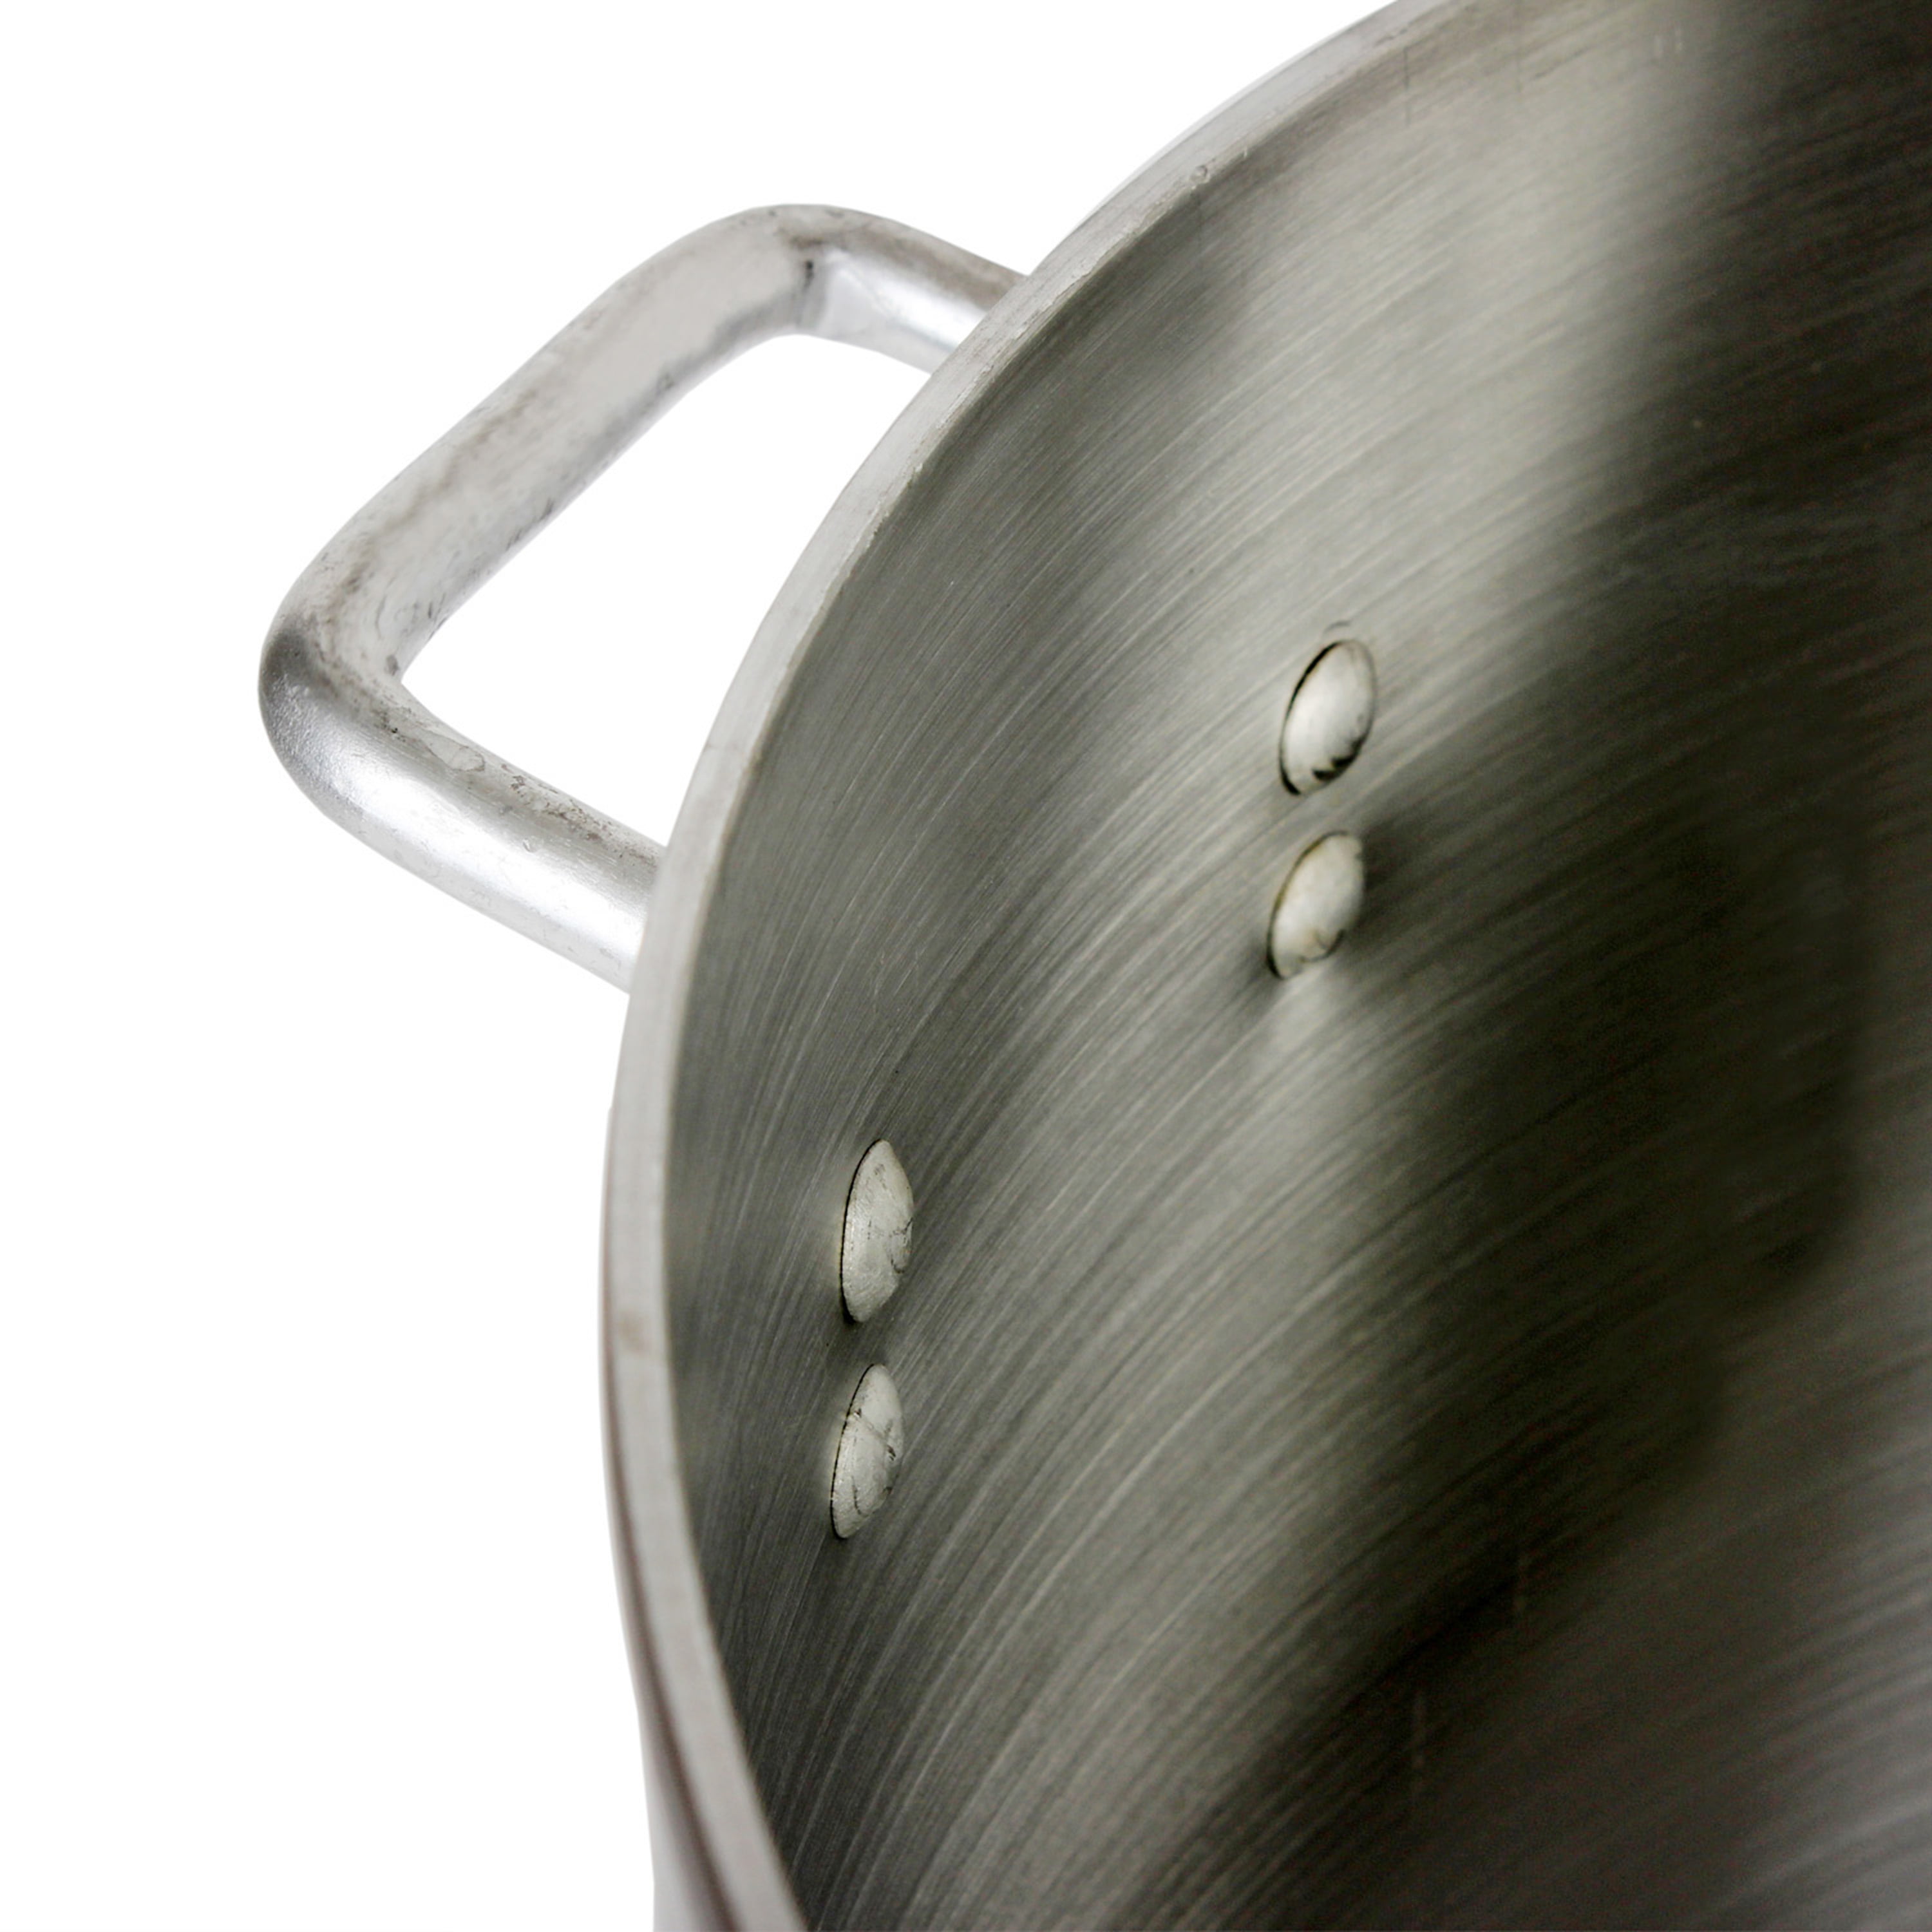 Aluminum Stock Pot – Ladle & Blade